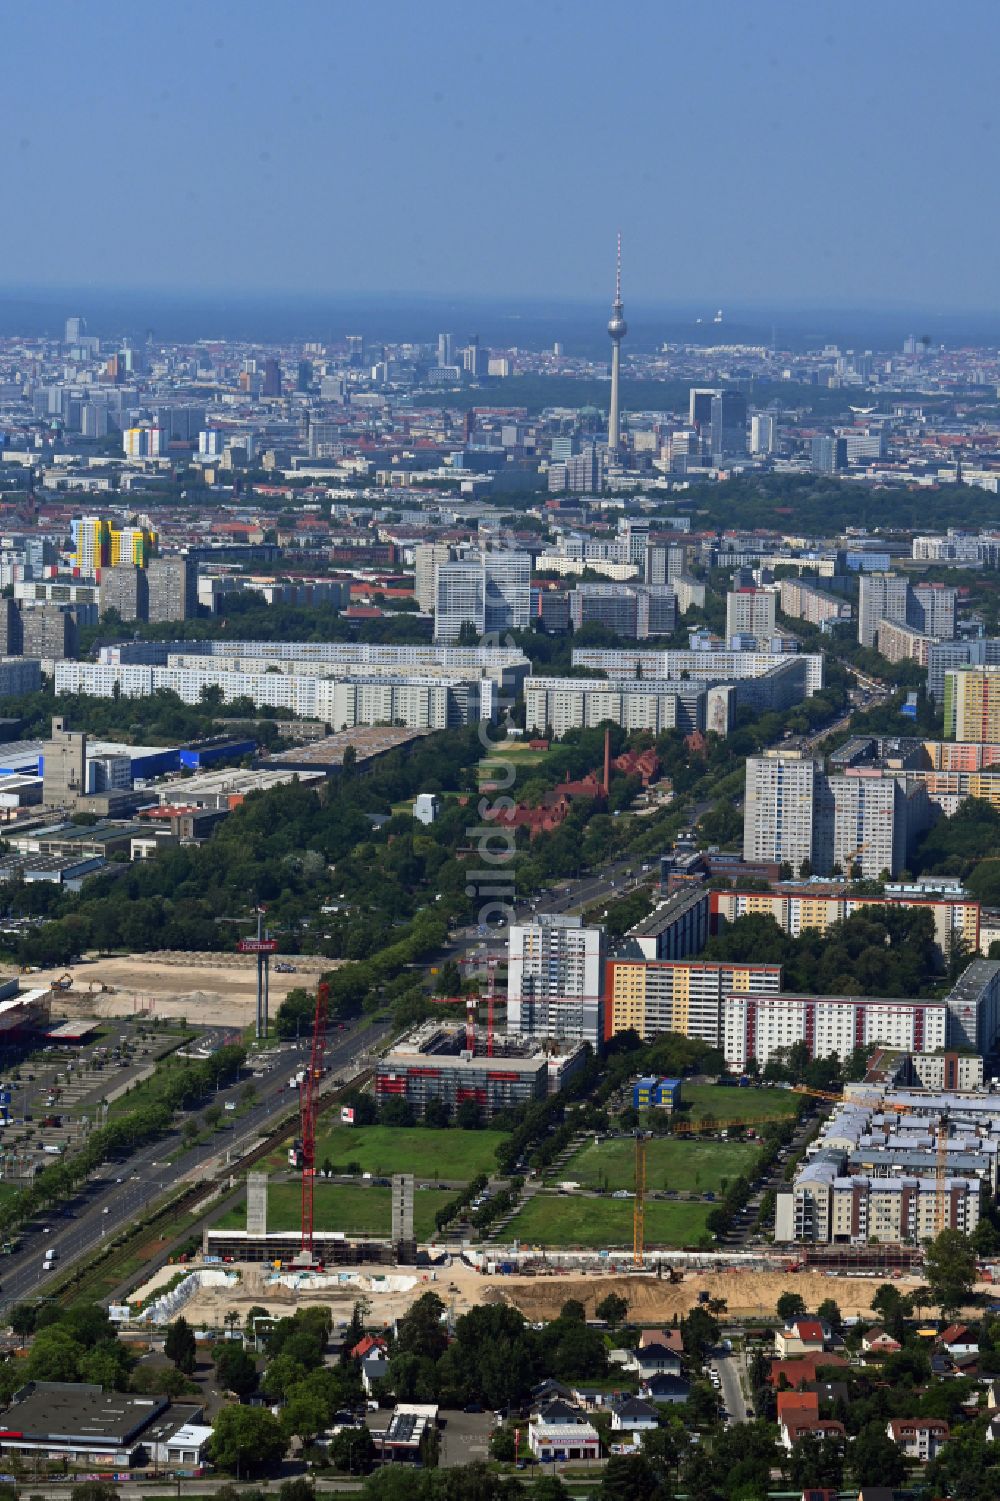 Luftbild Berlin - Neubau einer Mehrfamilienhaus-Wohnanlage Weiße Taube im Ortsteil Hohenschönhausen in Berlin, Deutschland